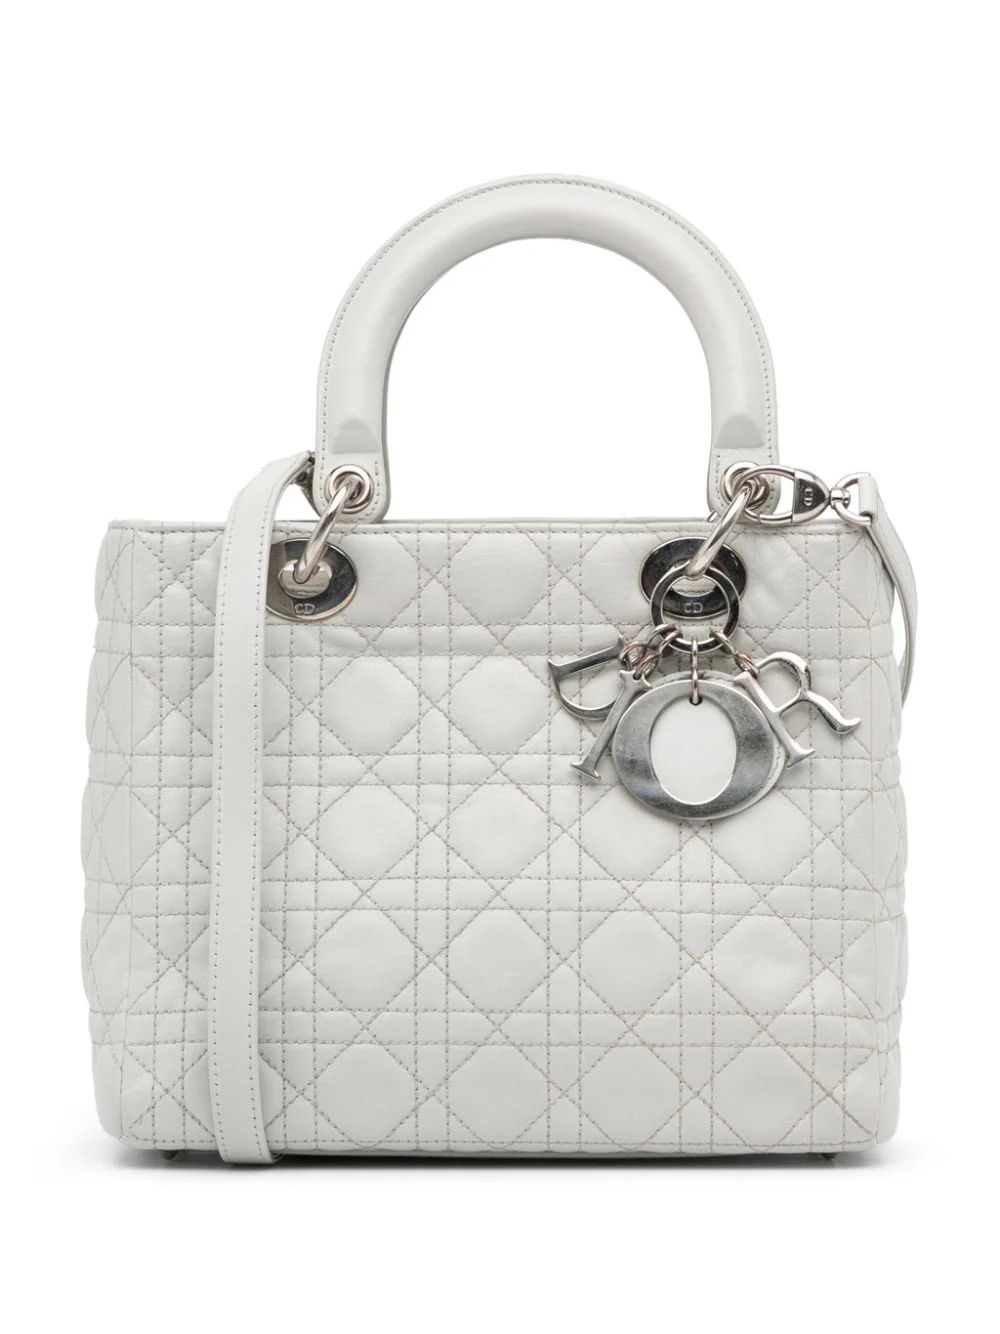 Christian Dior Pre-Owned 2011 Medium Cannage Lady Dior two-way Handbag - Farfetch | Farfetch Global